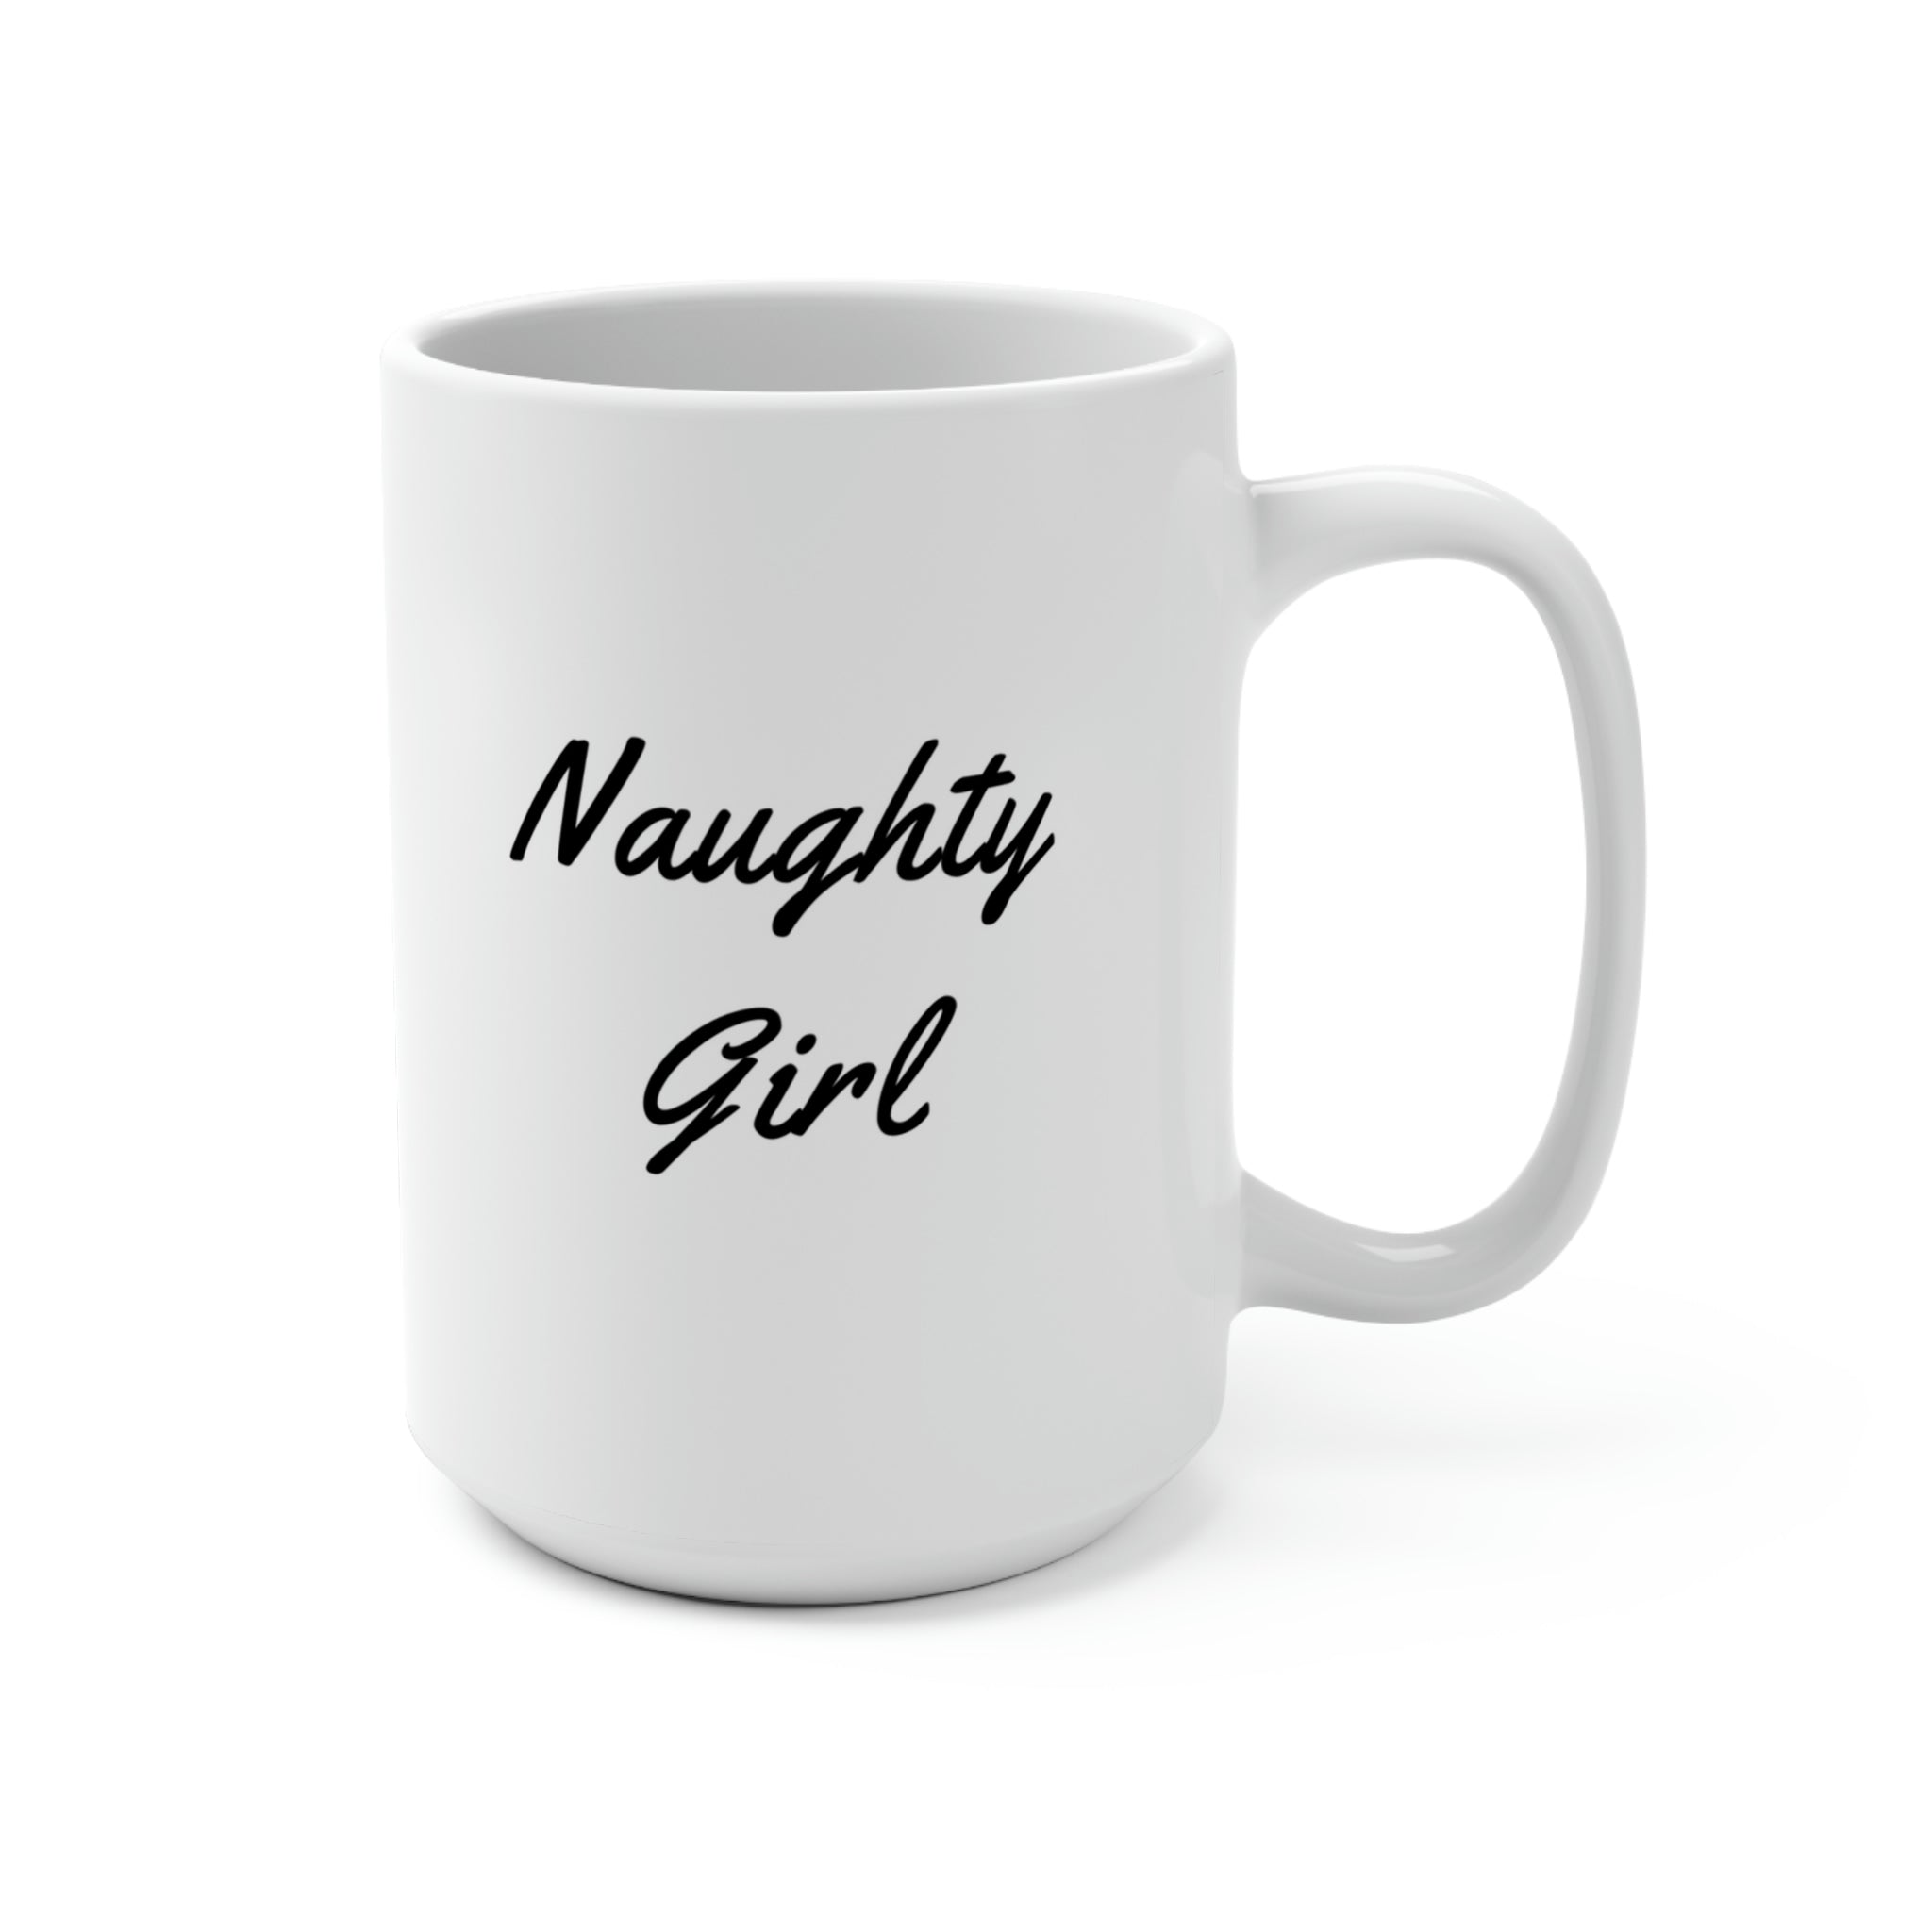 NAUGHTY GIRL - Novelty Coffee Mug - 15oz